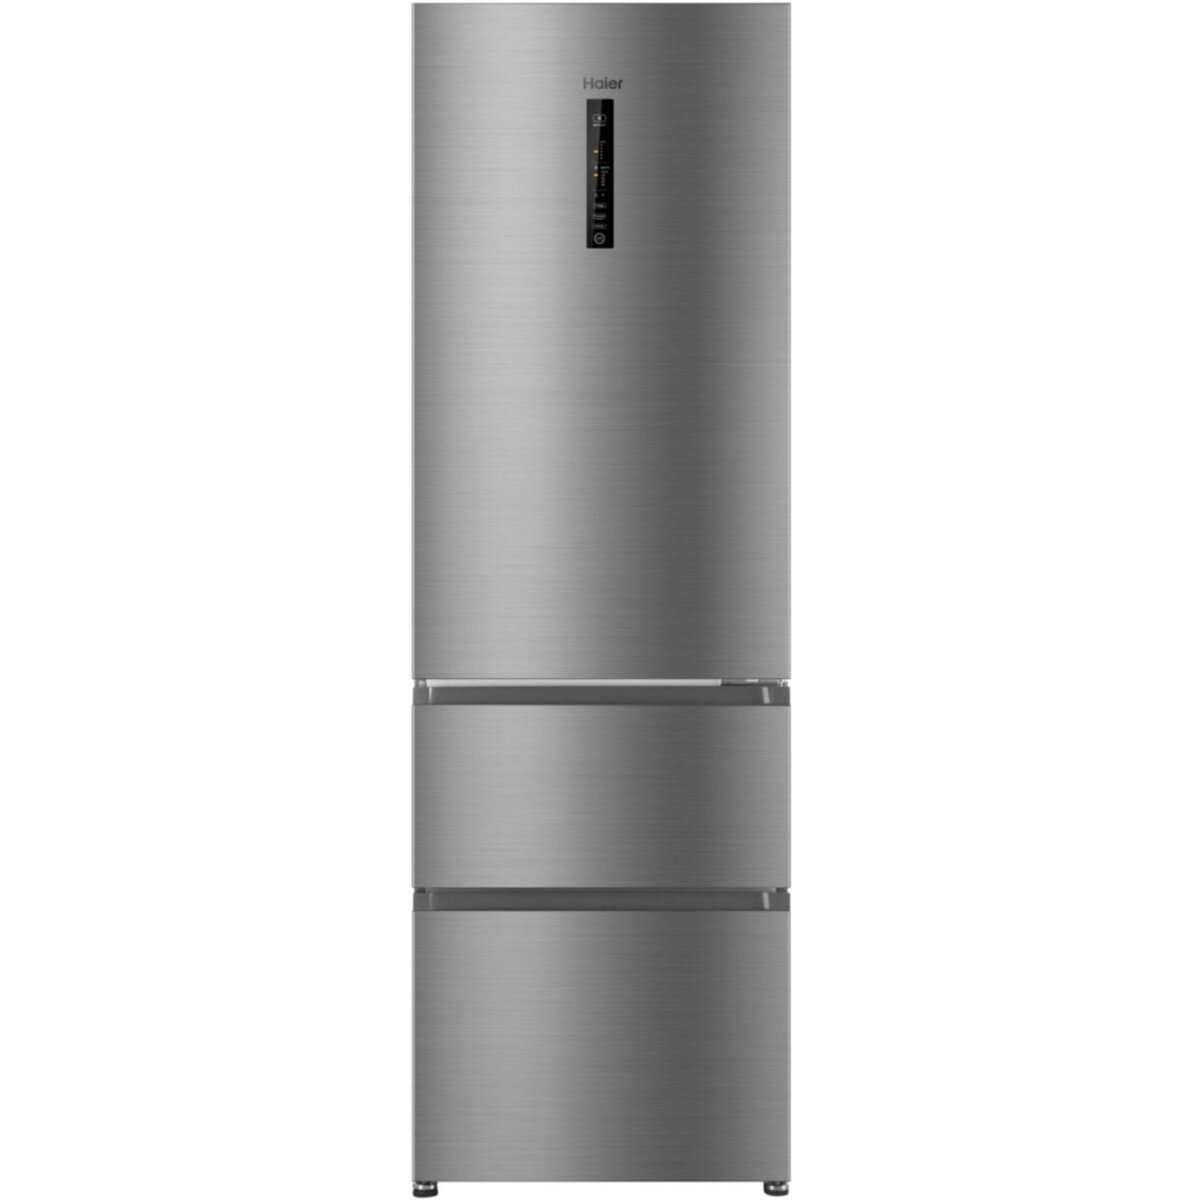 Bosch voit large avec ses nouveaux réfrigérateurs multiportes et